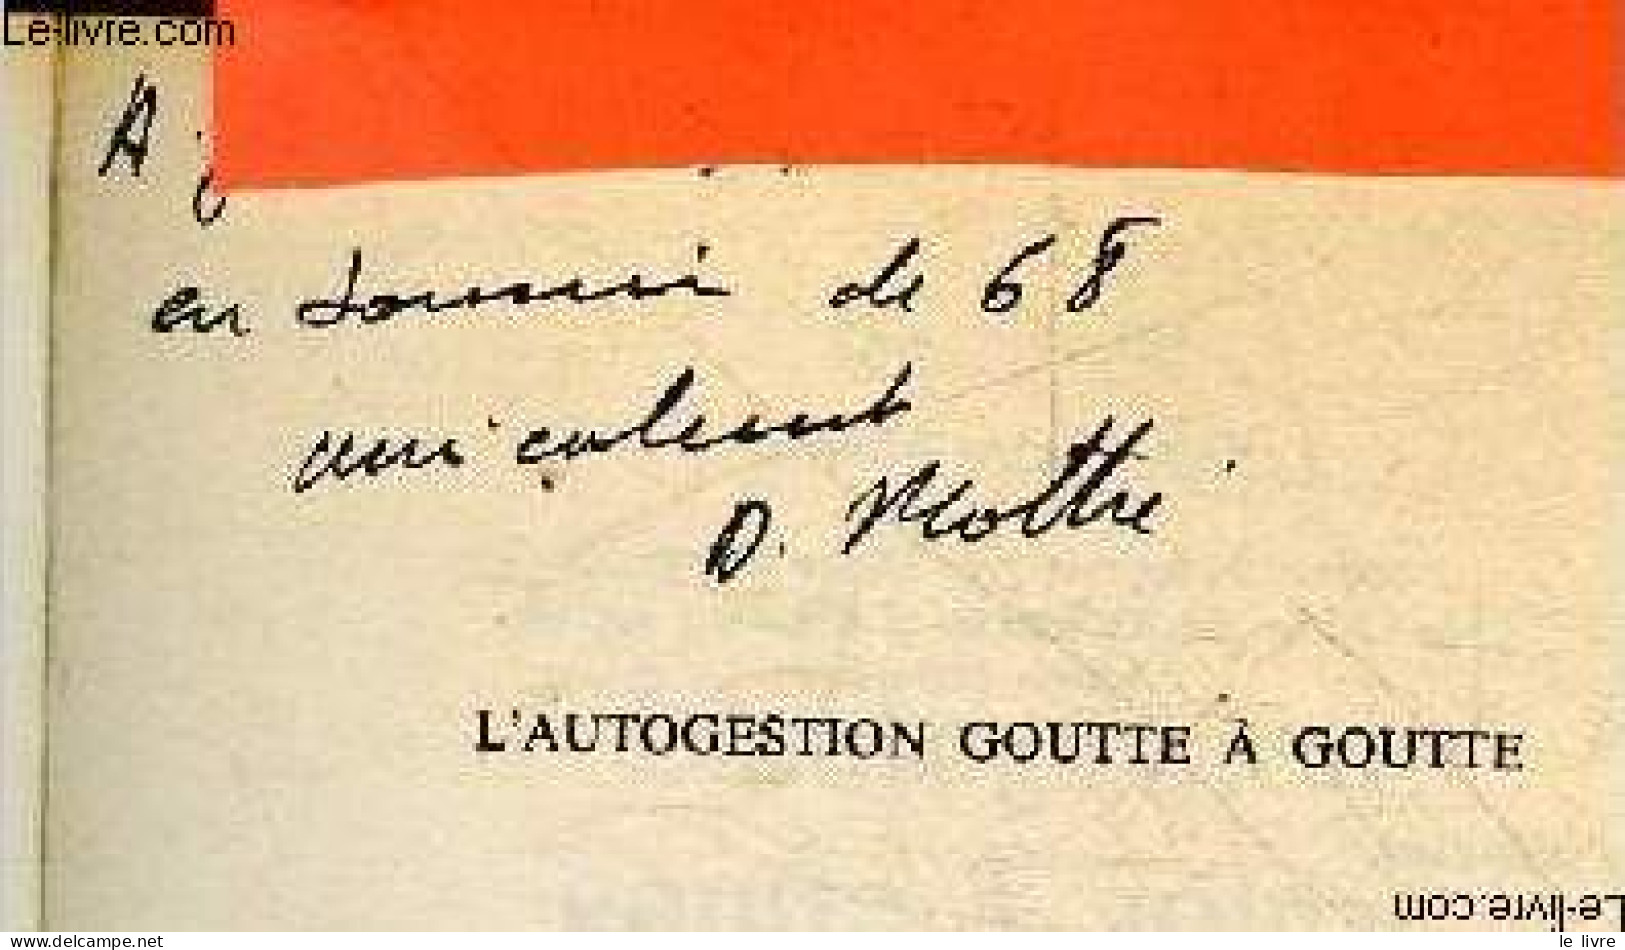 L'autogestion Goutte A Goutte - Collection Faire Notre Histoire - + Envoi De L'auteur - MOTHE DANIEL - 1980 - Autographed